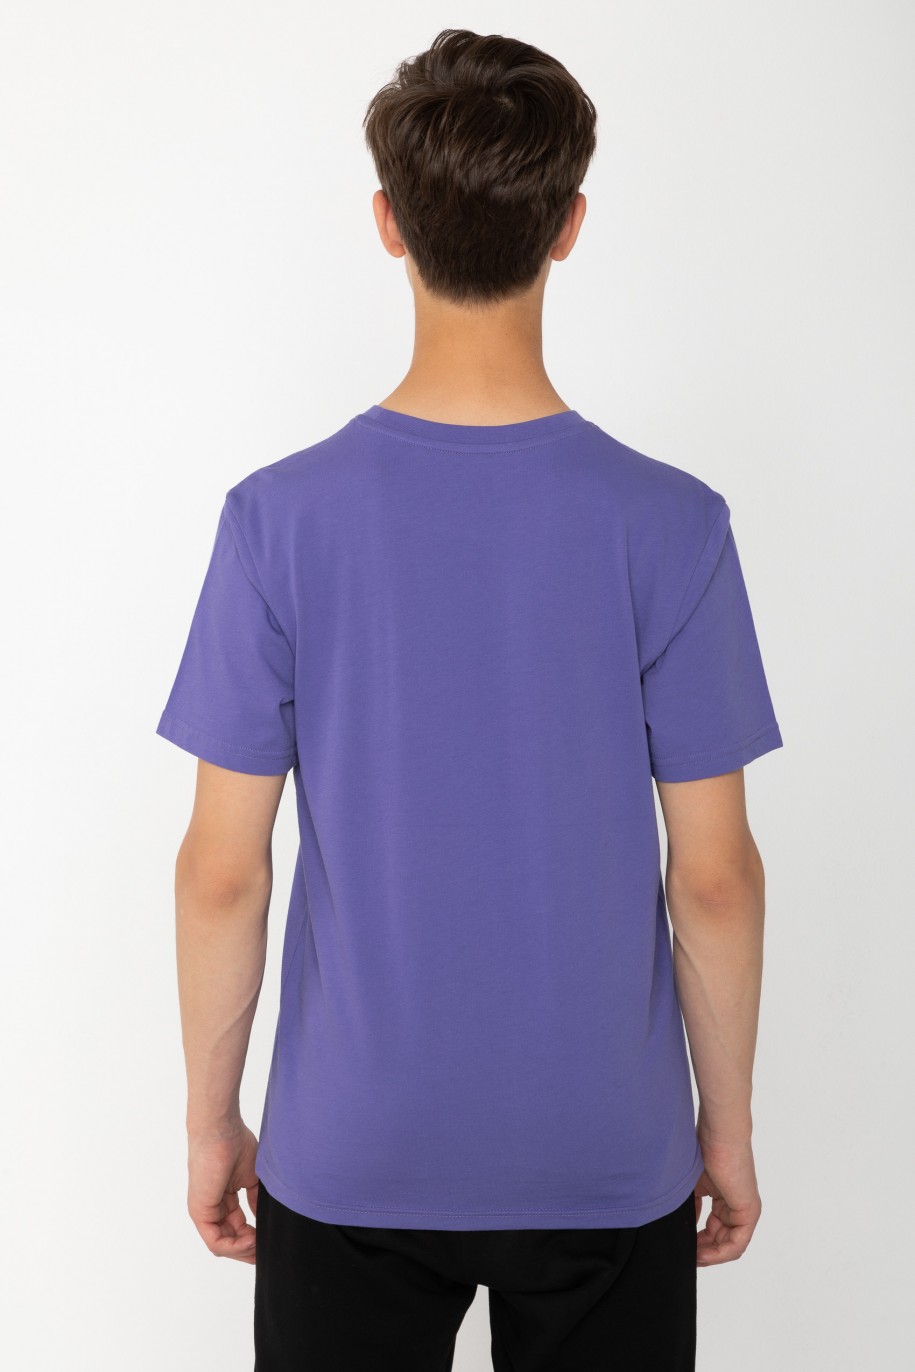 Fioletowy T-shirt z nadrukiem na środku - 43560